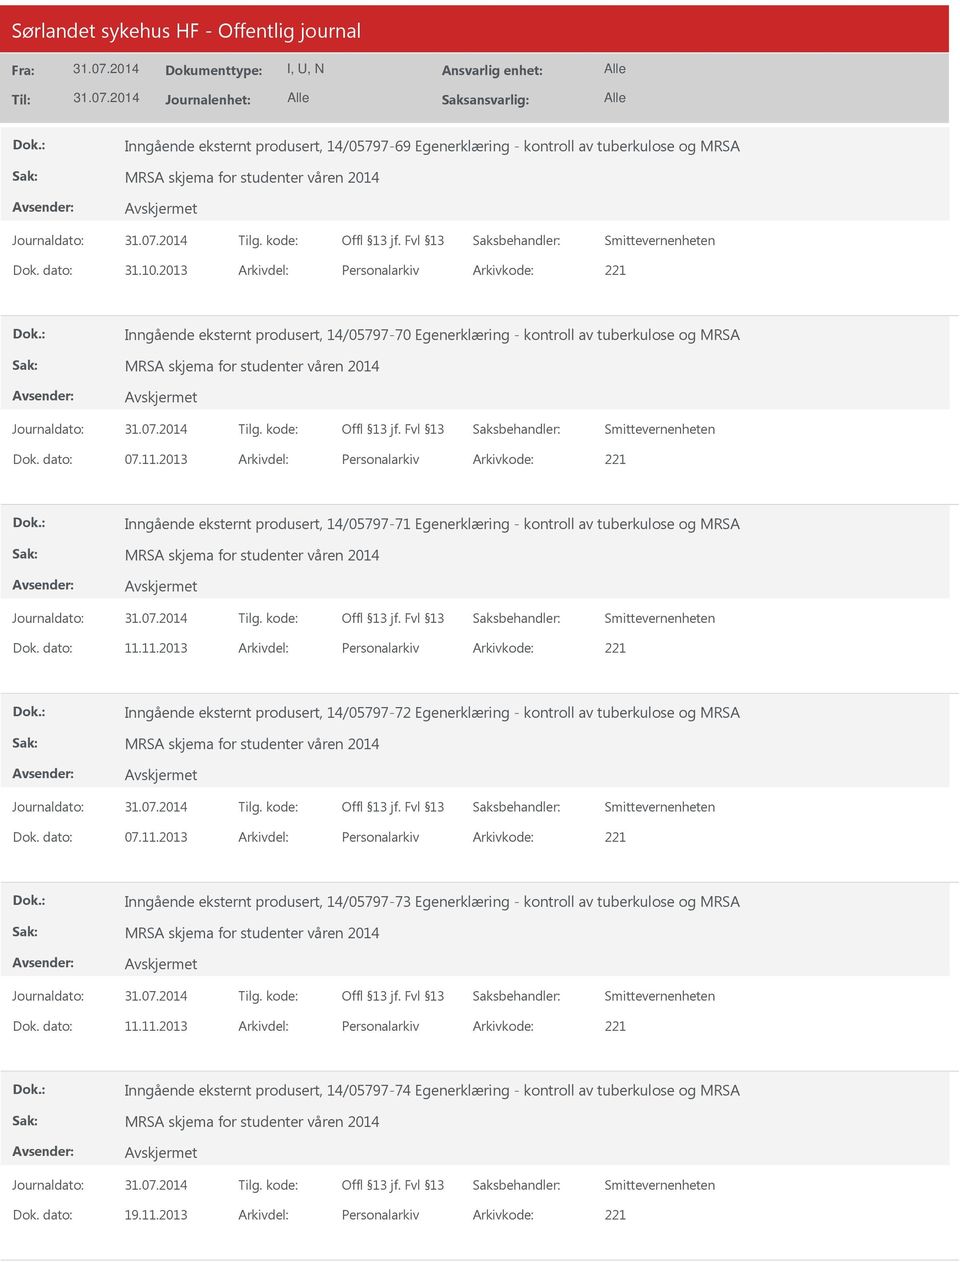 2013 Arkivdel: Personalarkiv Arkivkode: 221 Inngående eksternt produsert, 14/05797-71 Egenerklæring - kontroll av tuberkulose og MRSA Dok. dato: 11.